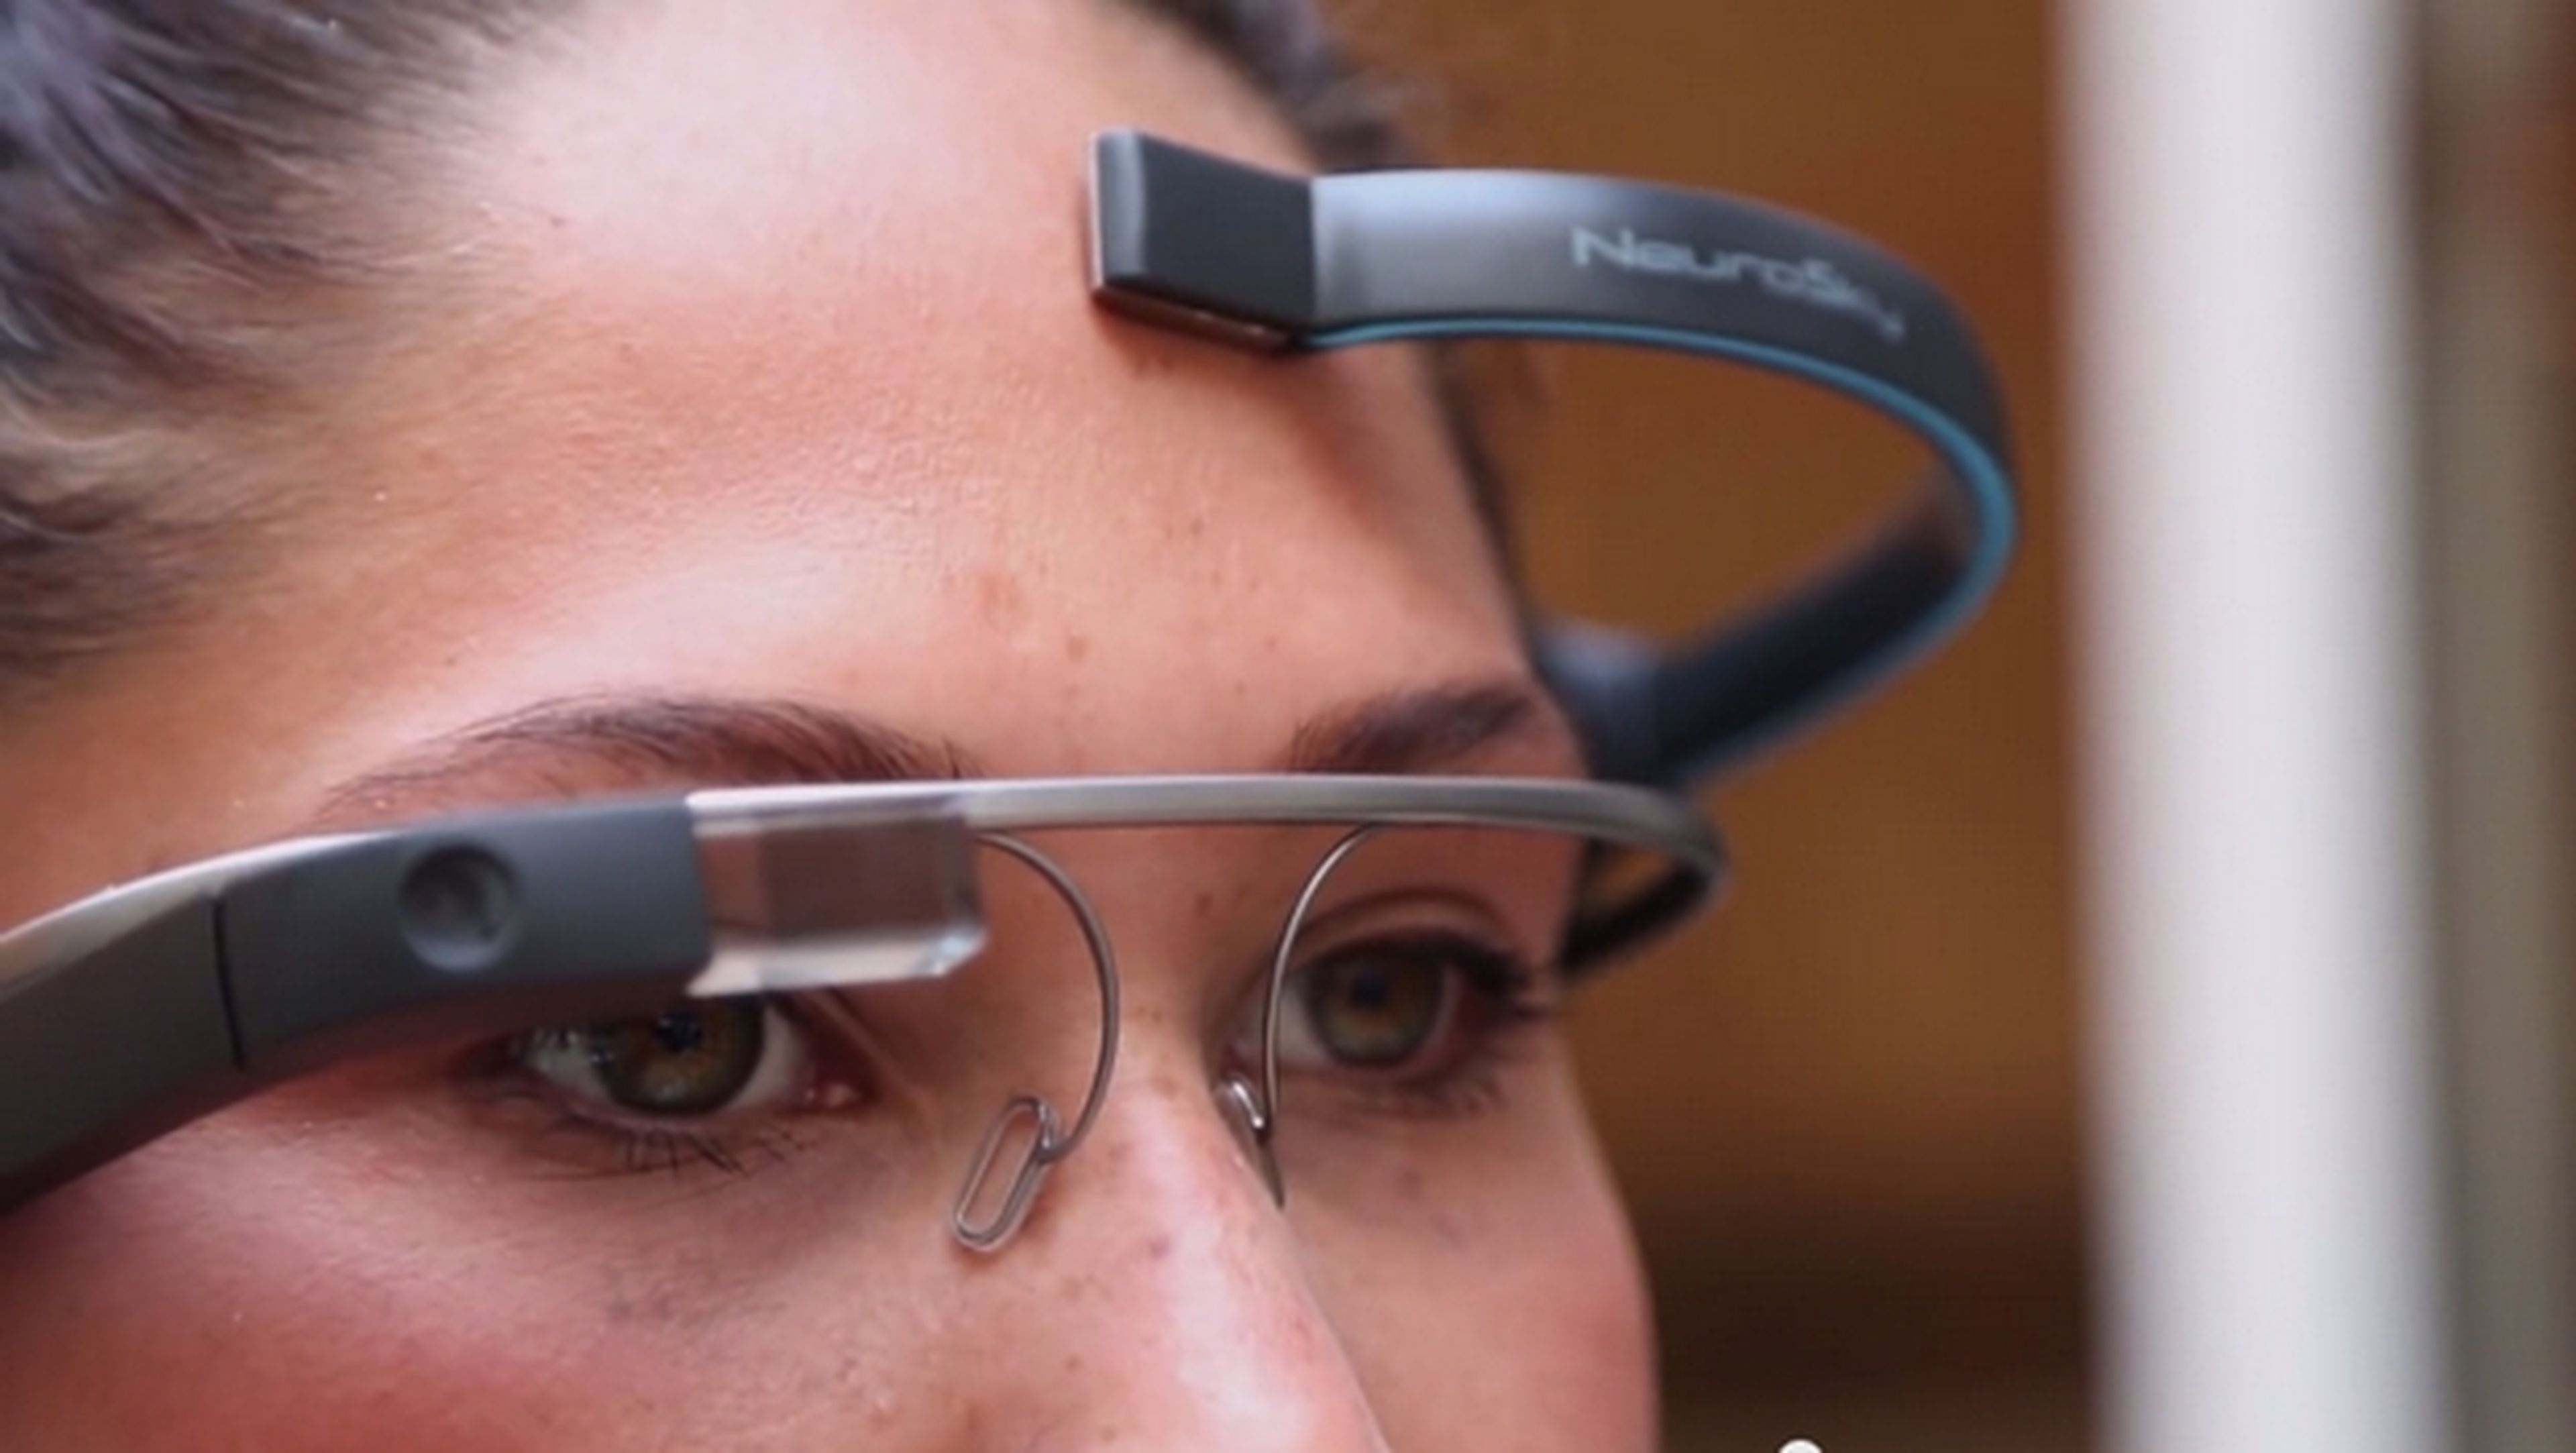 Un casco y la app MindRDR permite hacer fotos y tuitear con la mente, gracias a Google Glass.